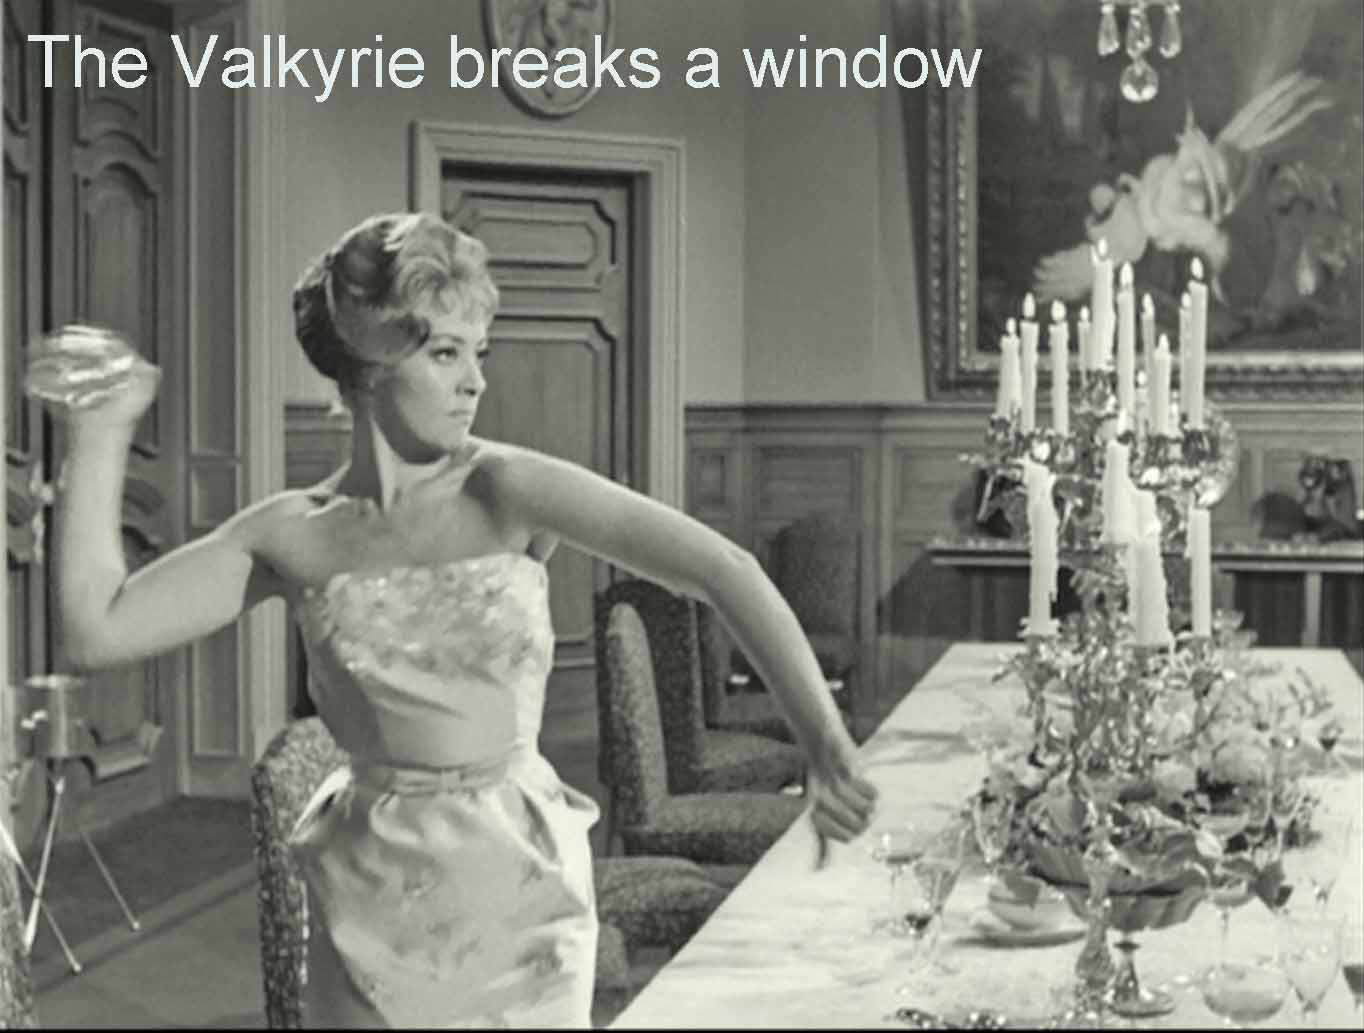 The Valkyrie breaks a window